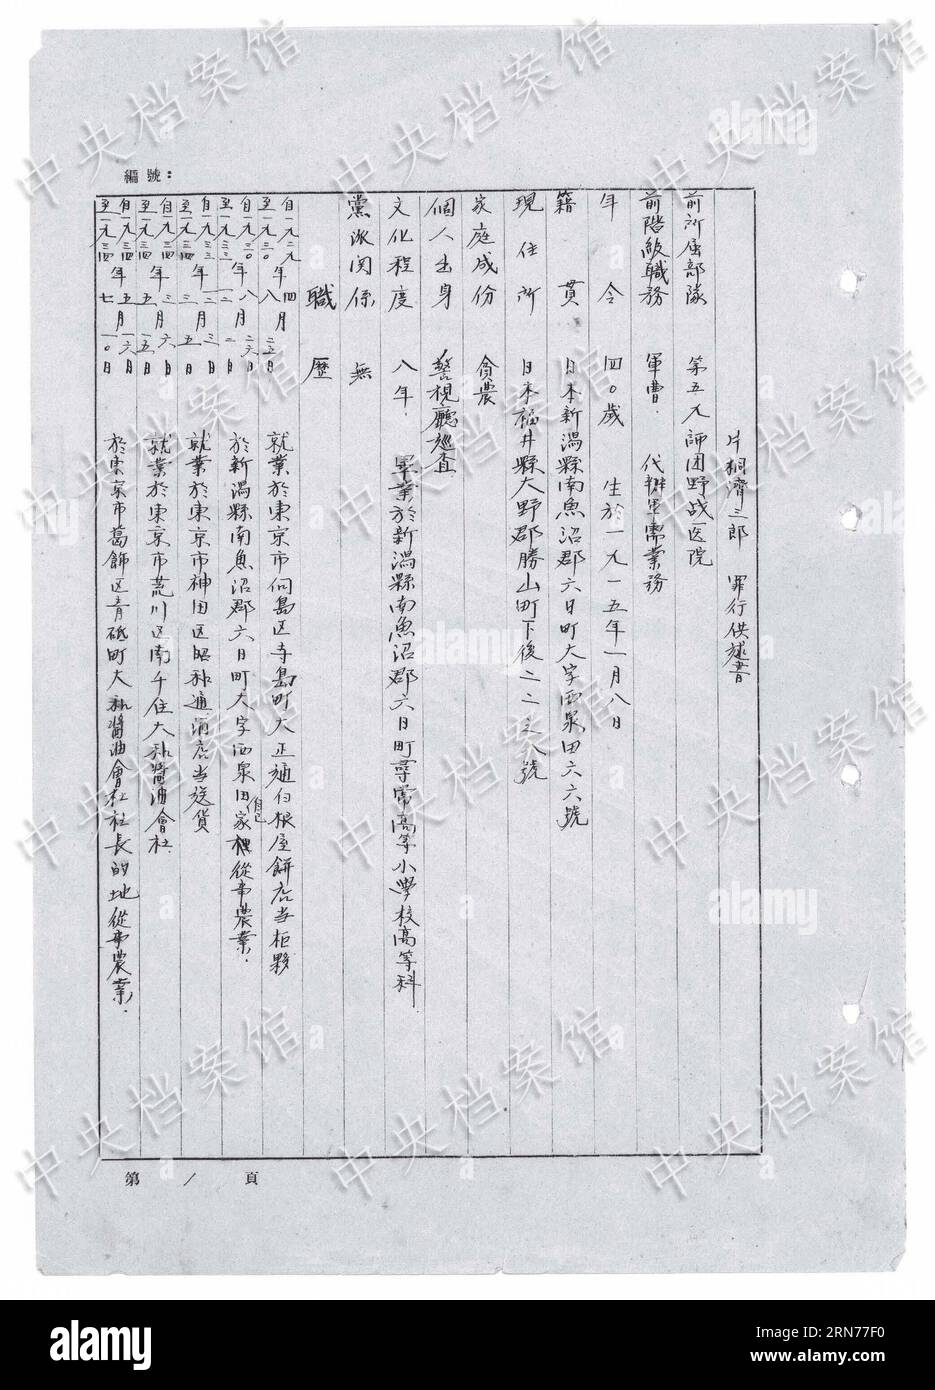 (150822) -- BEIJING, 22 août 2015 () -- une photo publiée le 22 août 2015 par l'Administration des archives d'État de Chine sur son site web montre la version chinoise d'un extrait de la confession manuscrite du criminel de guerre japonais Seizaburo Katagiri. Selon la confession écrite de Seizaburo Katagiri, publiée par l'Administration des archives de l'État (SAA), il faisait partie d'une équipe qui a effectué une vivisection sur un homme chinois pour étudier l'anatomie humaine. Seizaburo, qui a été capturé en 1945, a avoué qu'à l'hôpital militaire de Harbin en 1936, il a été chargé de prélever les organes de l'homme, une procédure qui r Banque D'Images